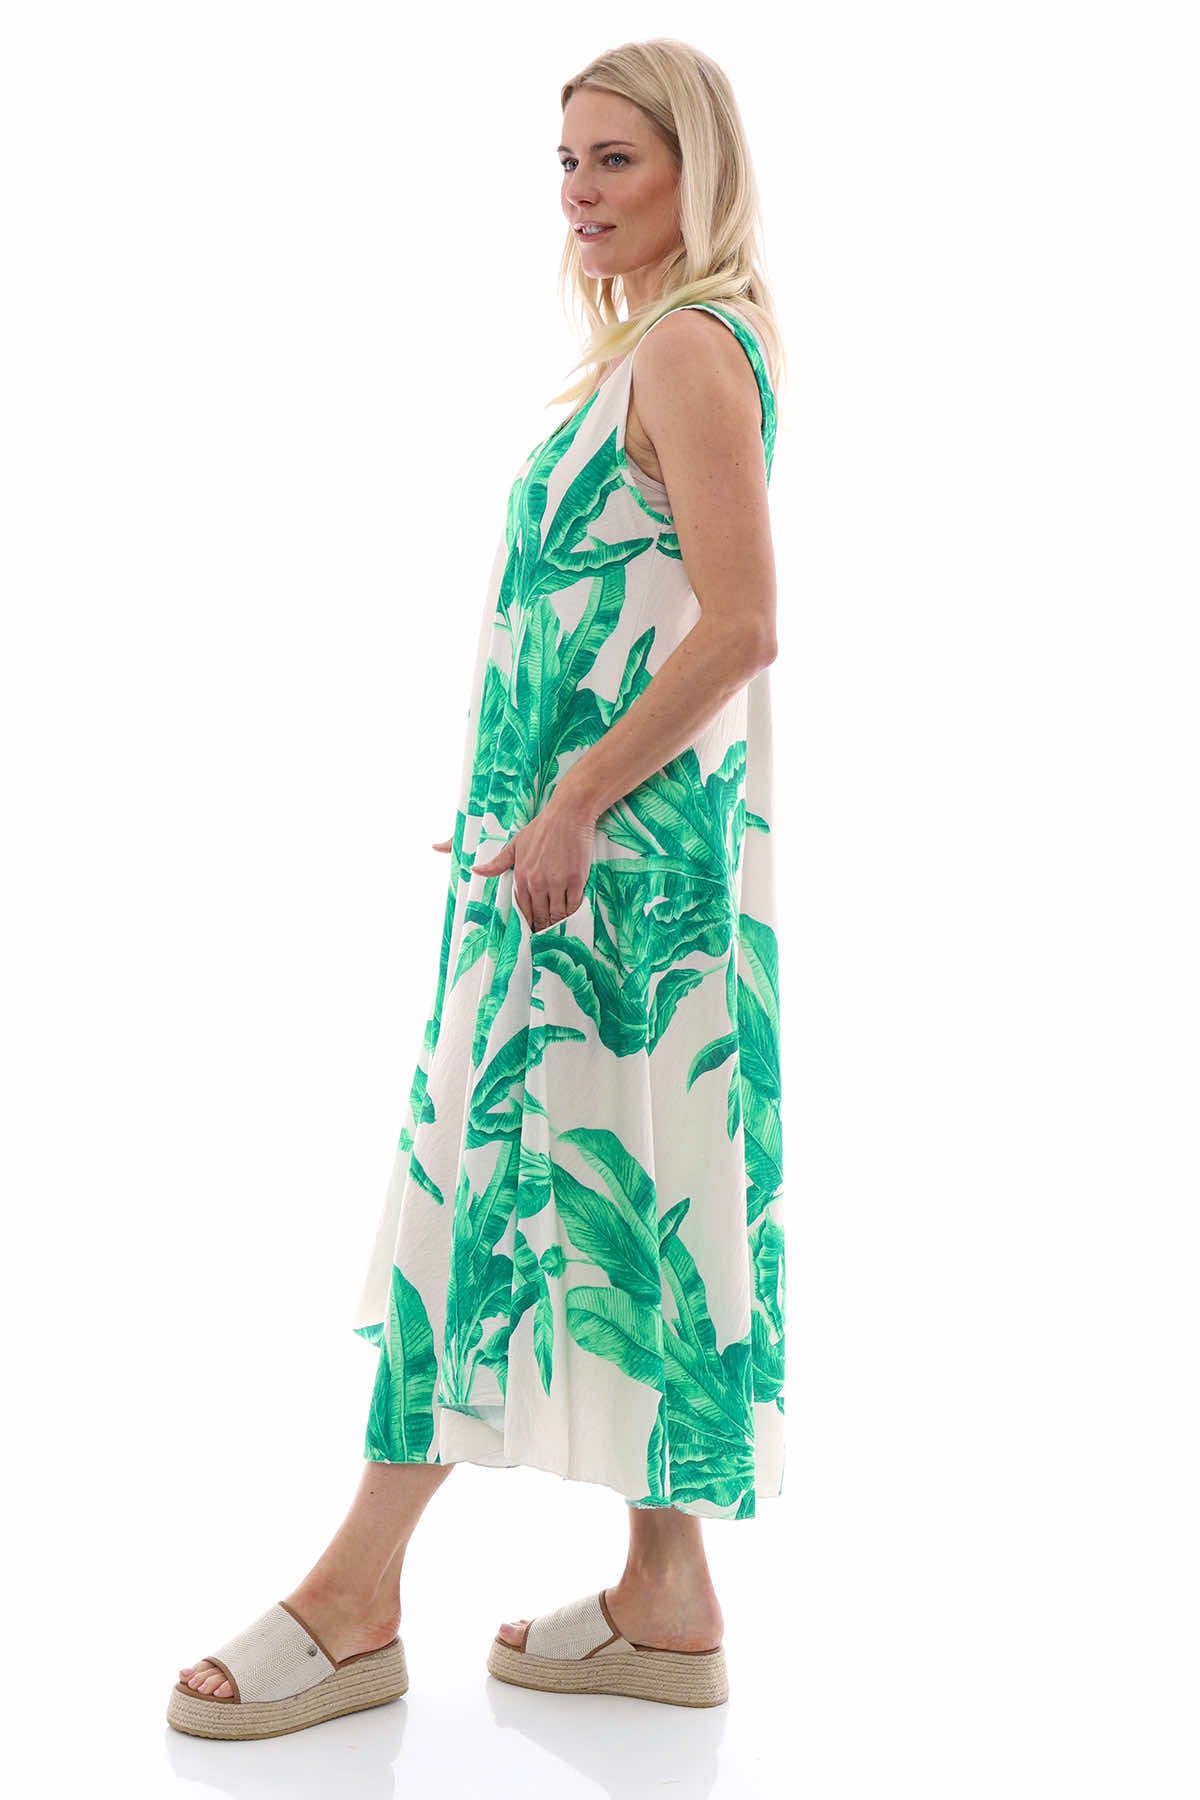 Fenyx Botanical Dress Emerald